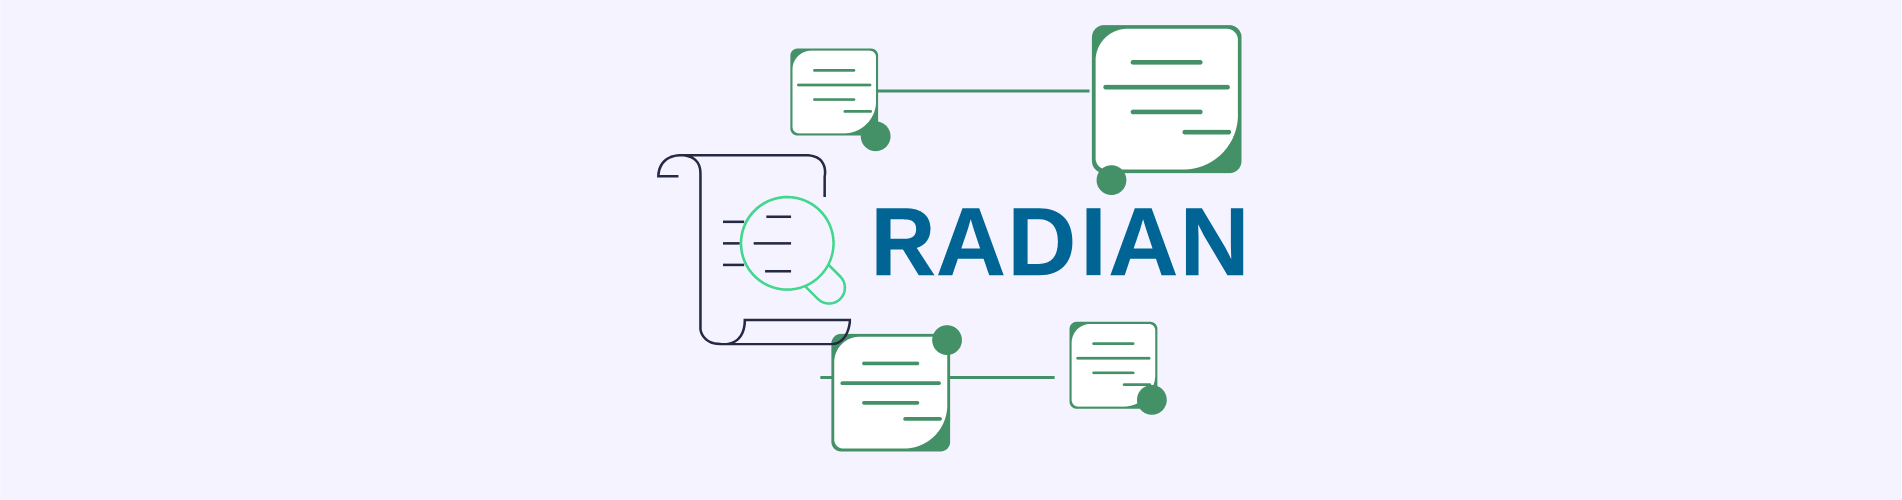 ¿Qué es RADIAN y cómo funciona?